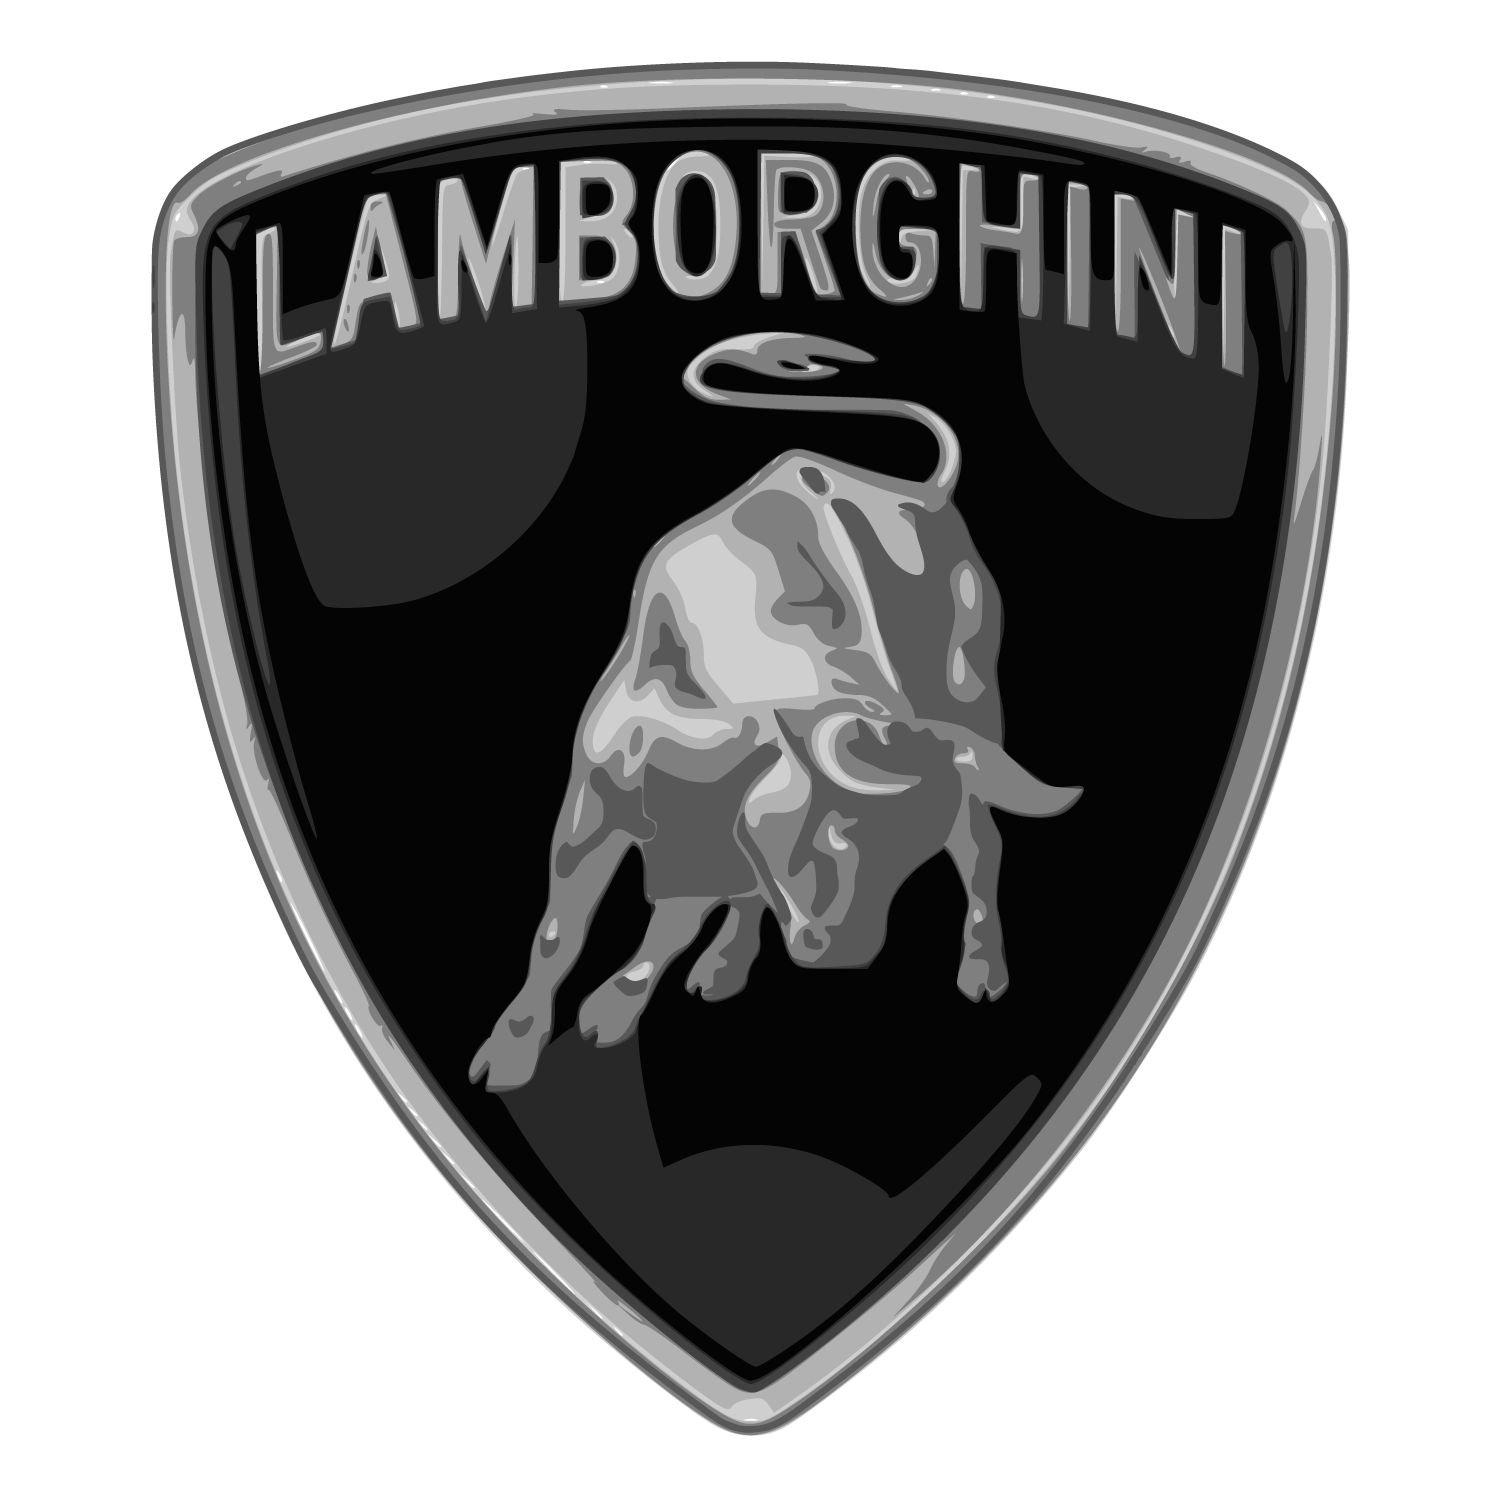 Lamborghinis for Rent